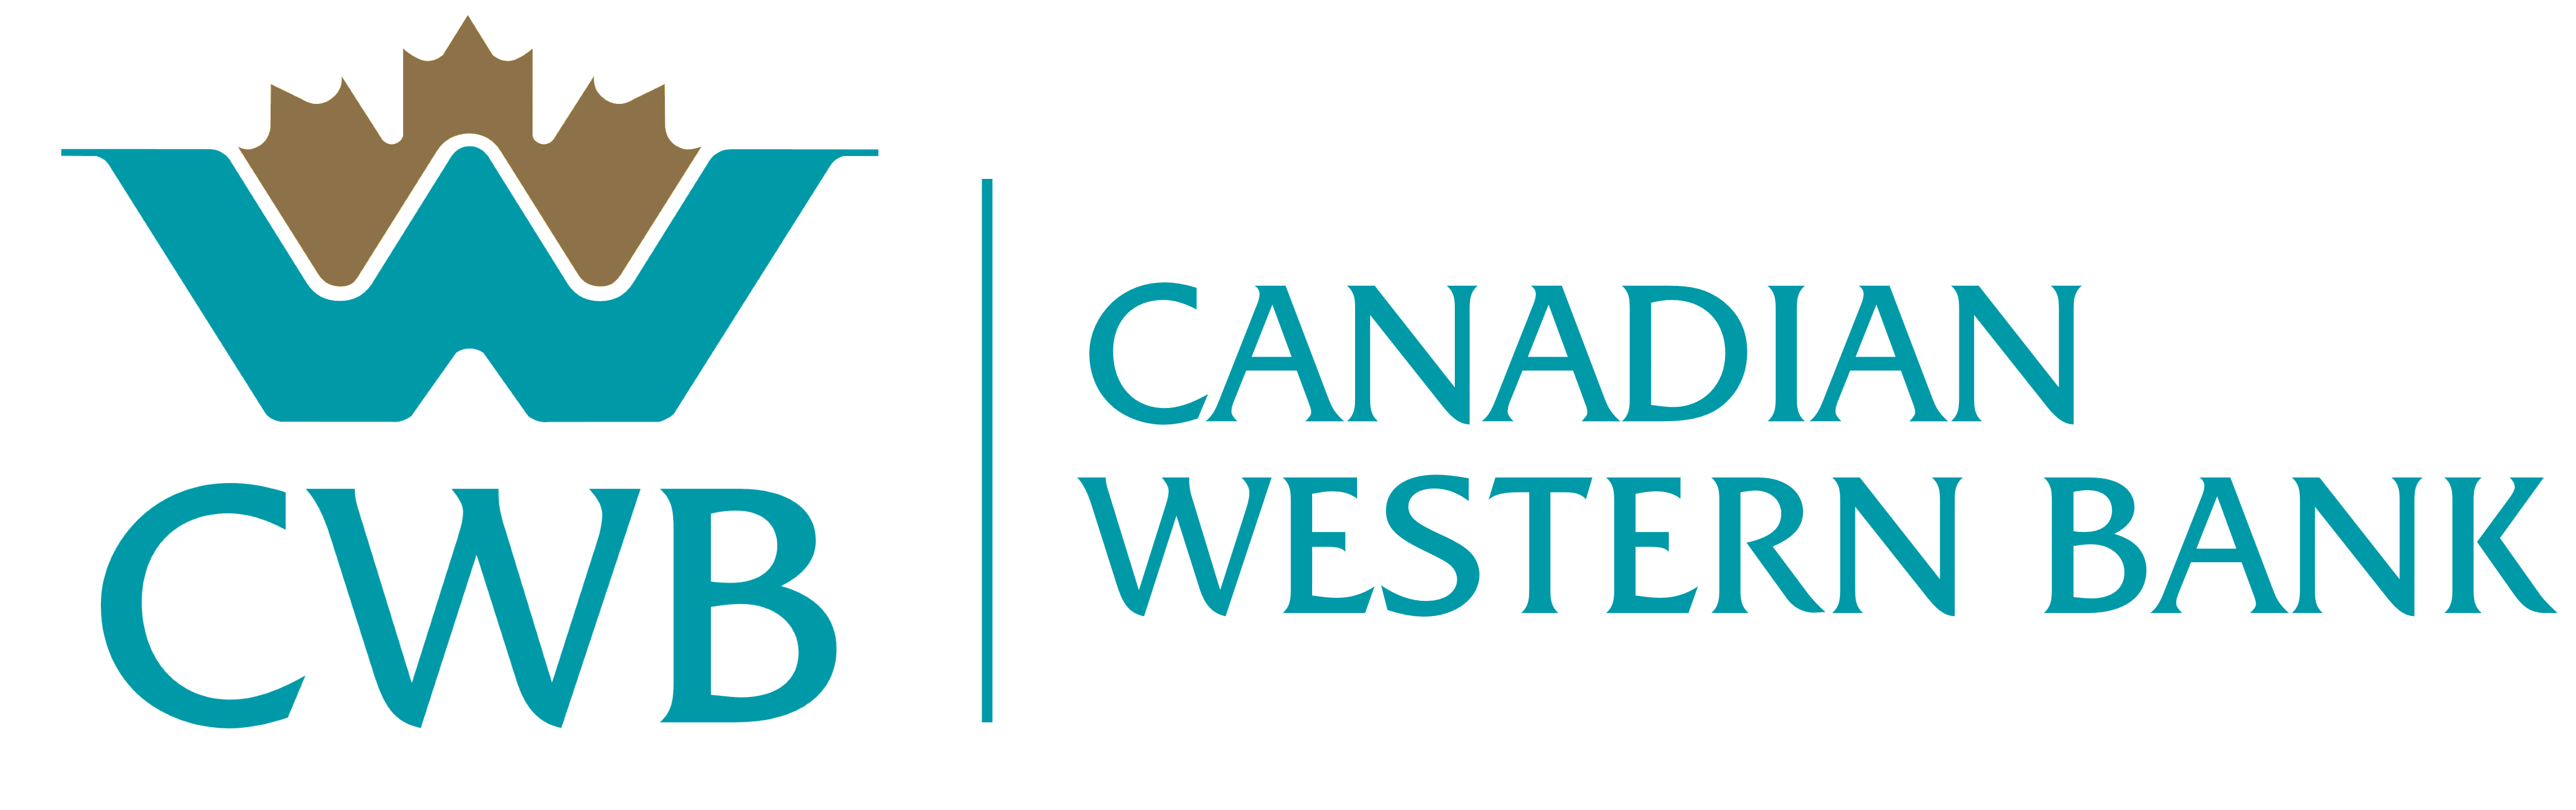 CWB_Canadian_Western_Bank_logo